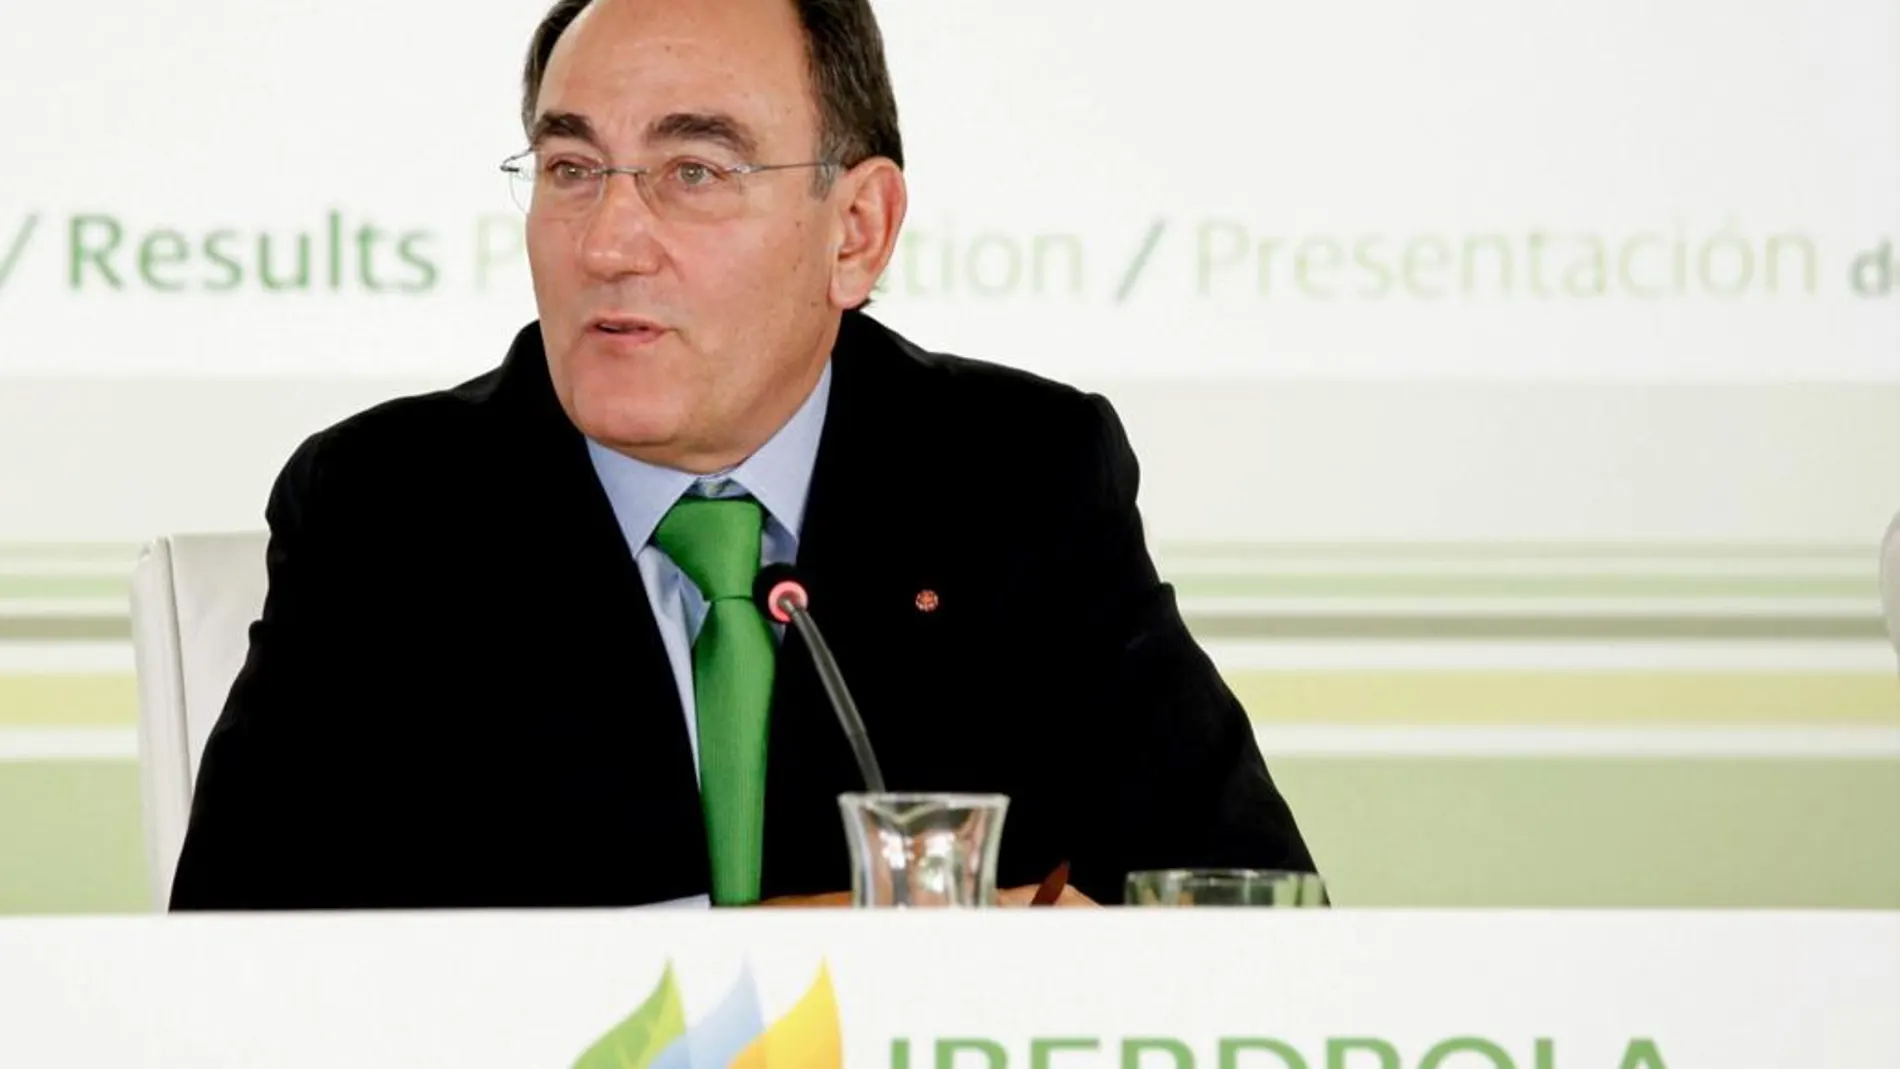 El presidente de Iberdrola, Ignacio Sánchez Galán